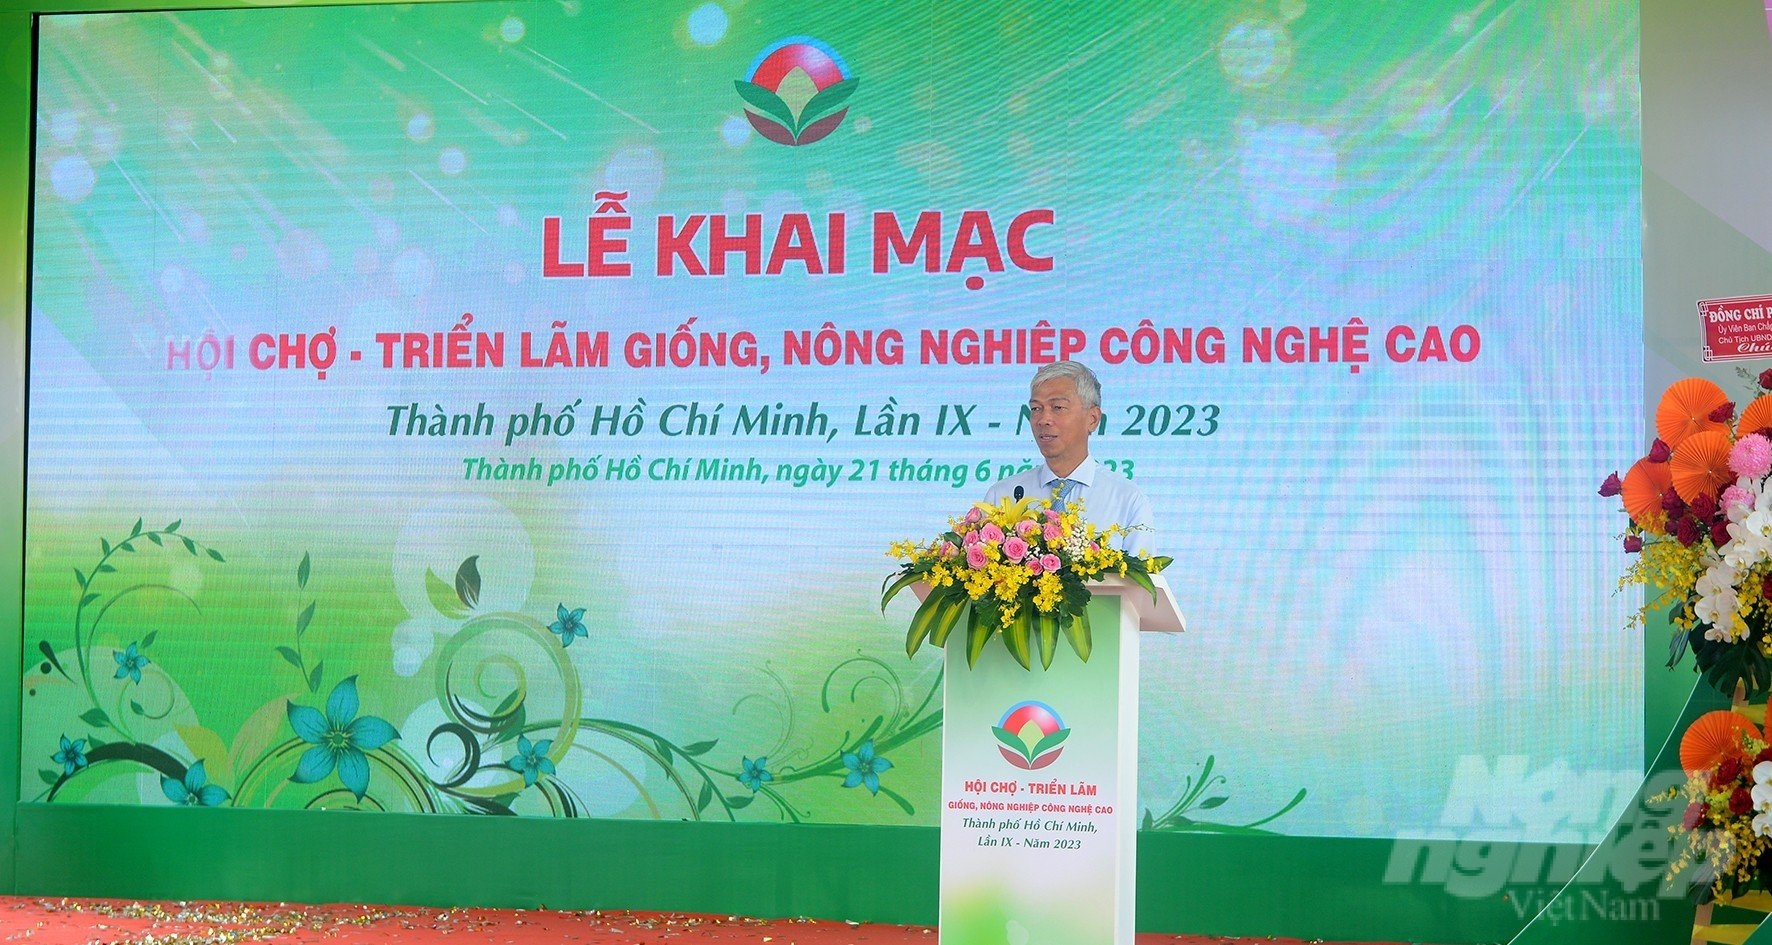 Ông Võ Văn Hoan - Phó Chủ tịch UBND TP.HCM phát biểu tại lễ khai mạc. Ảnh: Lê Bình.